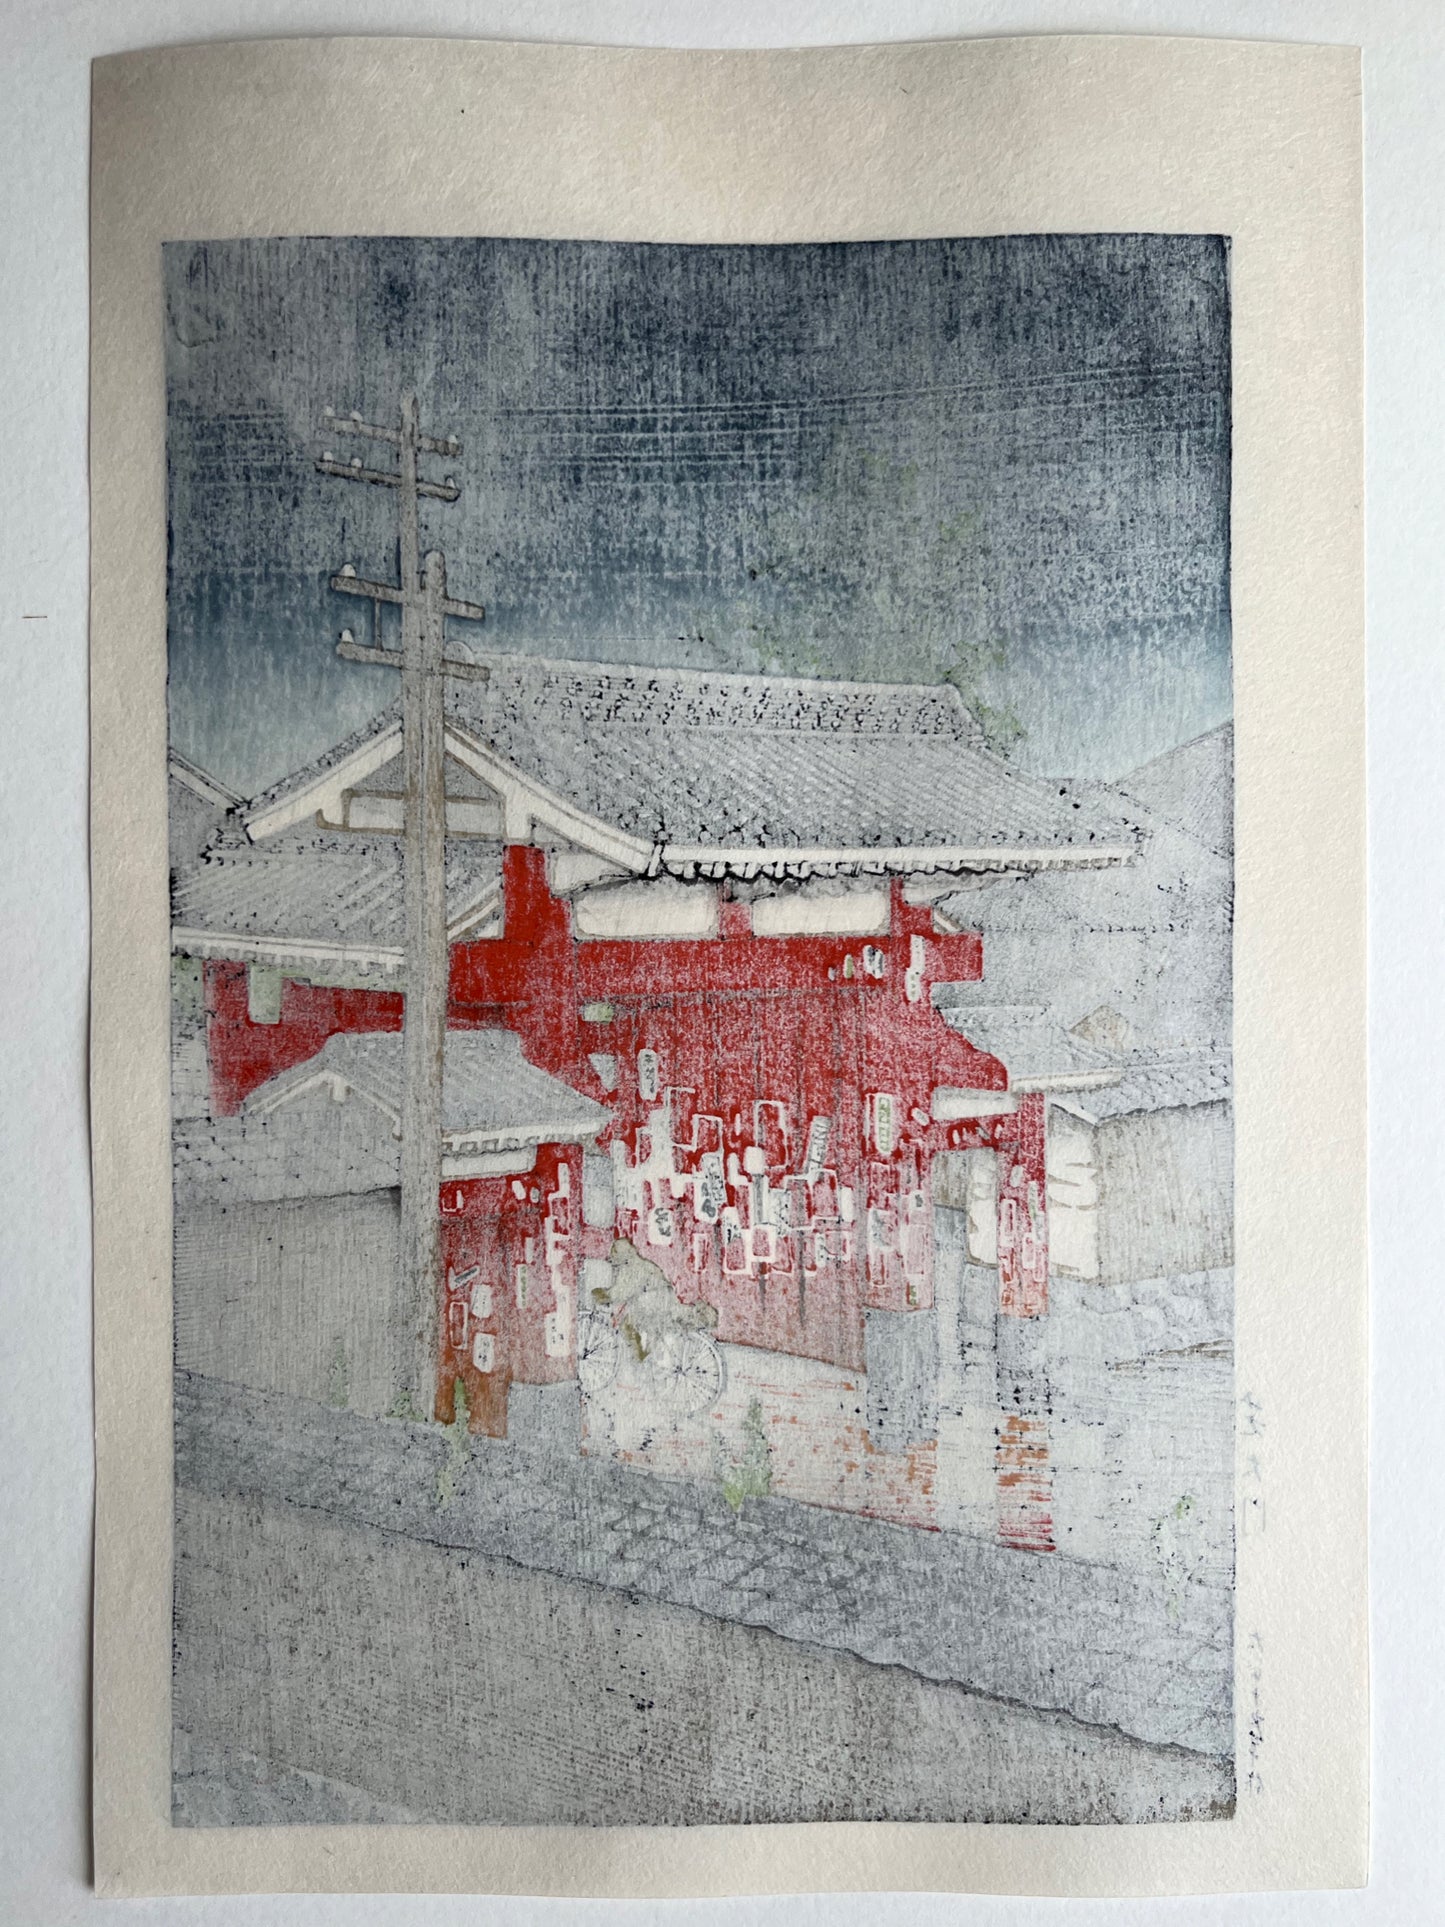 estampe japonaise un personnage à vélo franchit la grande porte rouge d'un temple sous la pluie à Tokyo, dos de l'estampe